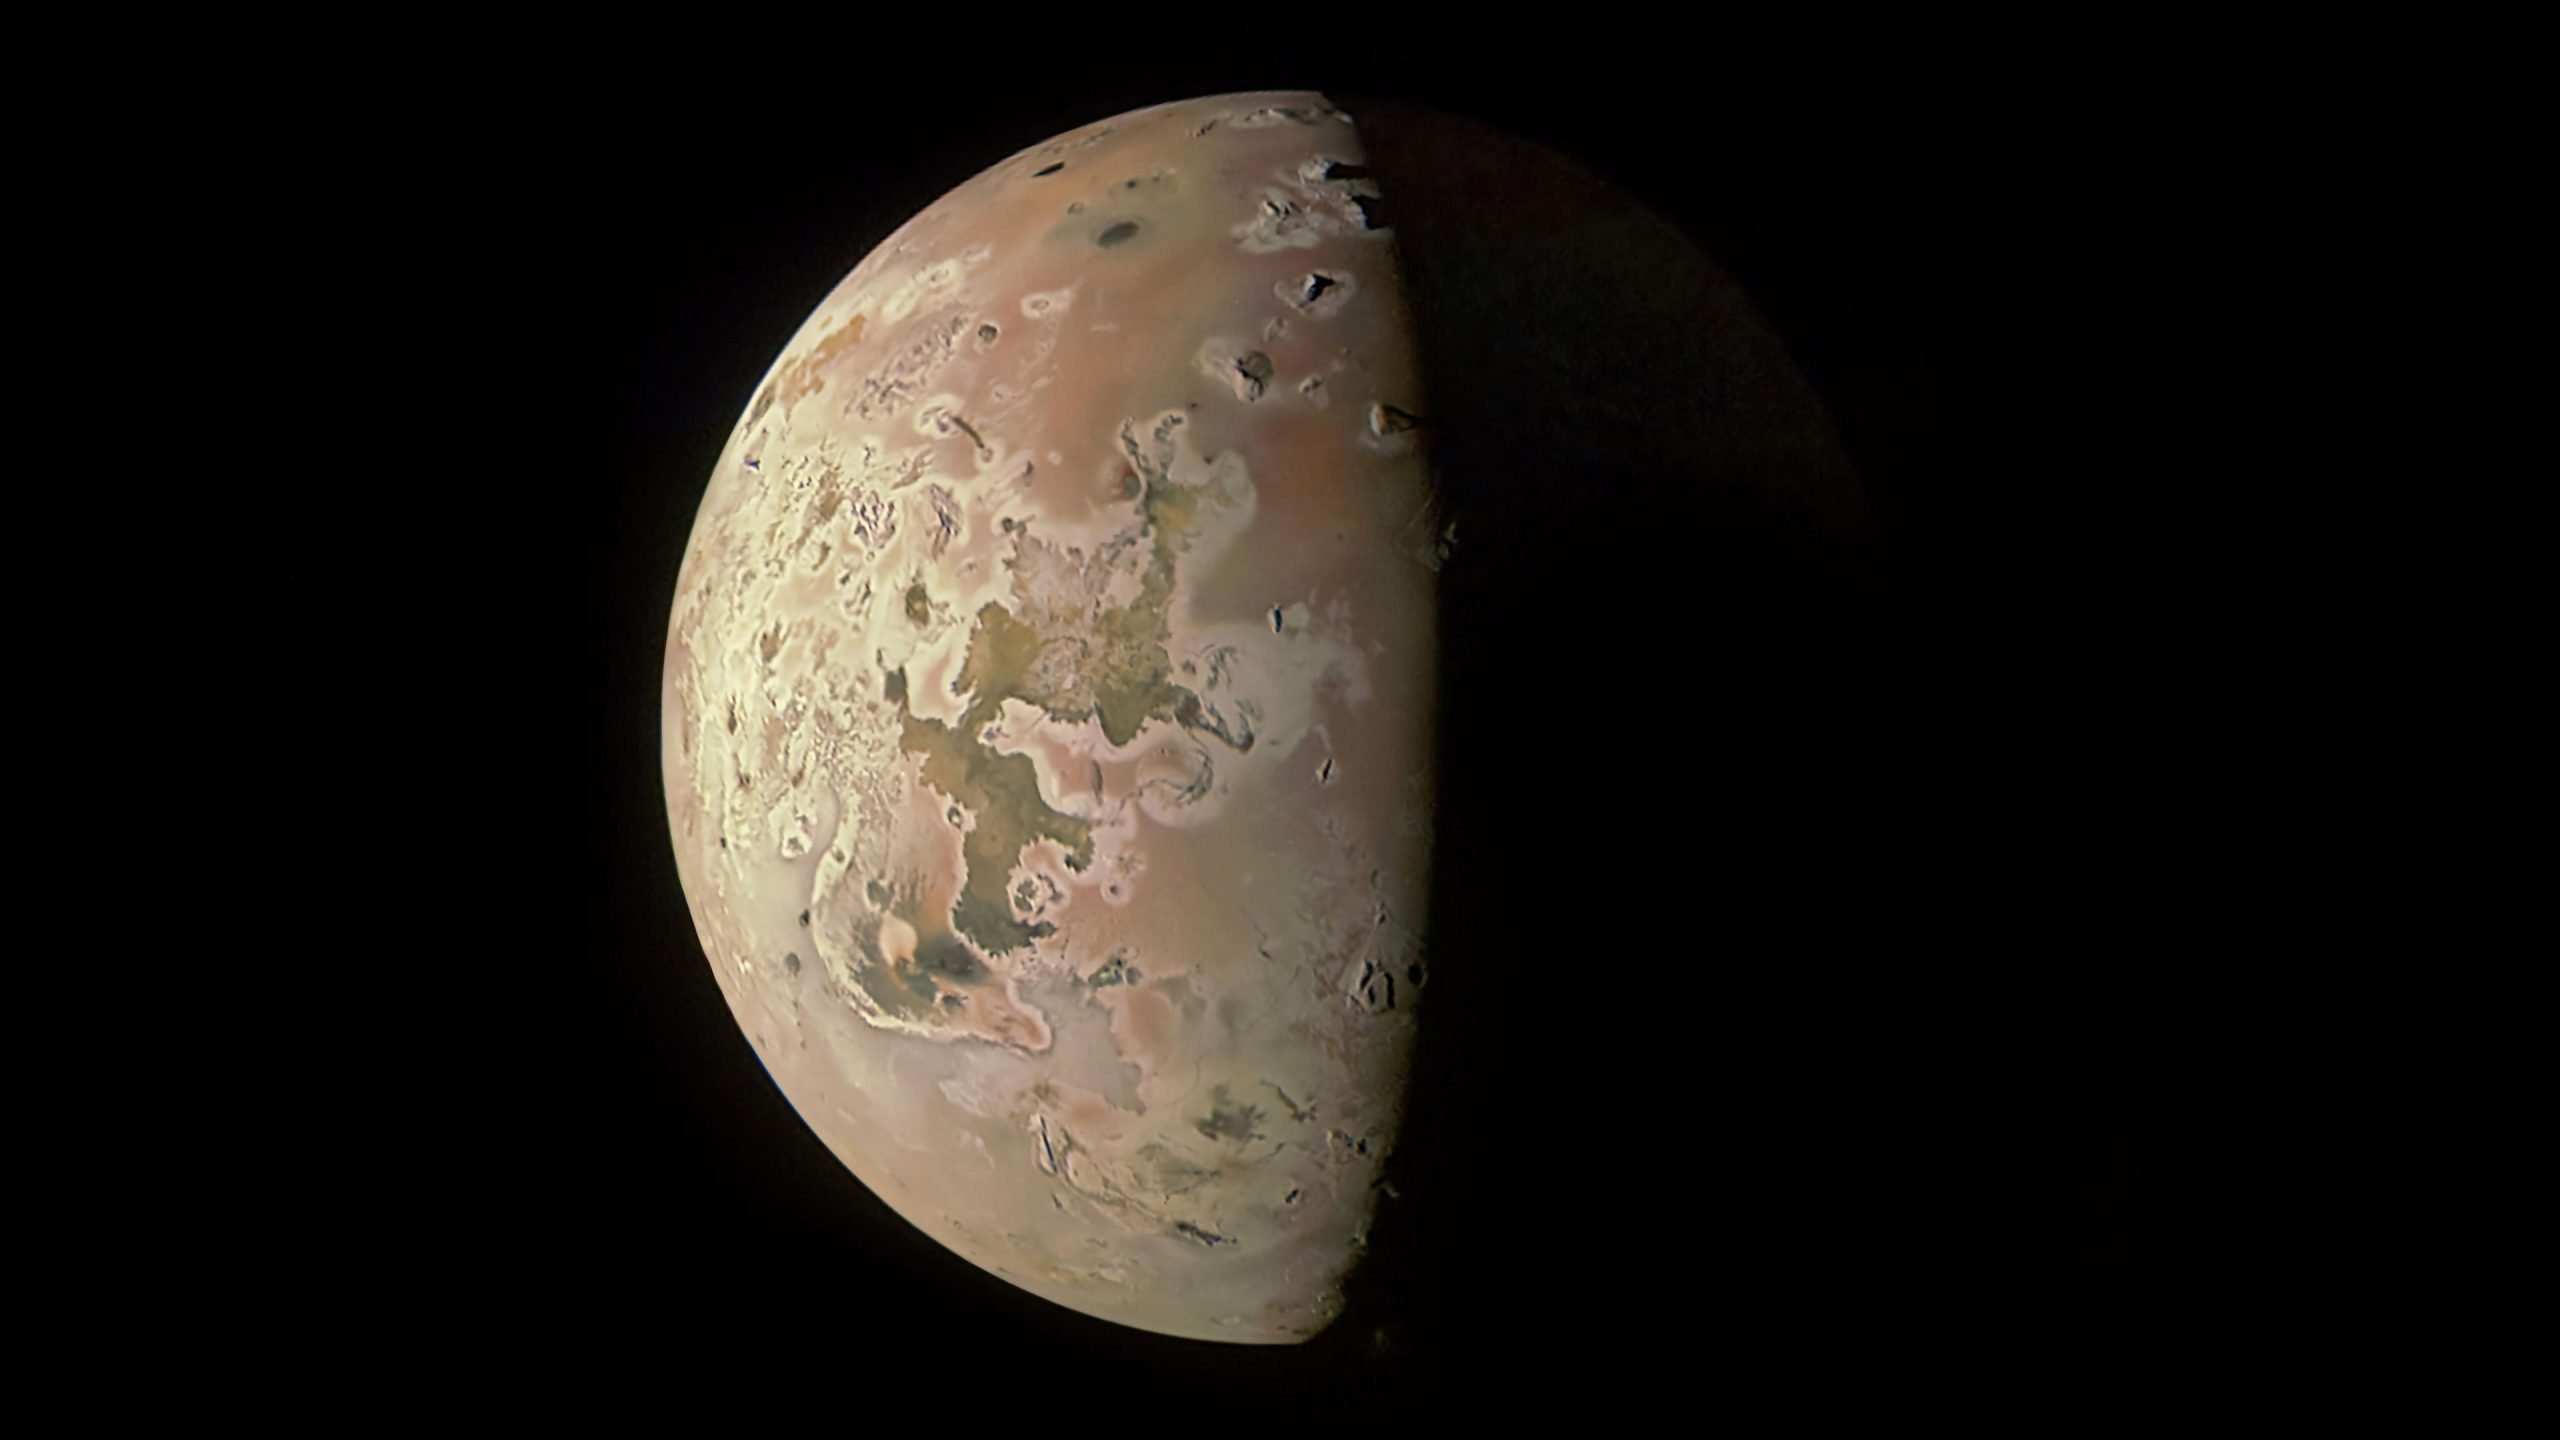 Revealing the secrets of Jupiter’s fiery moon Io